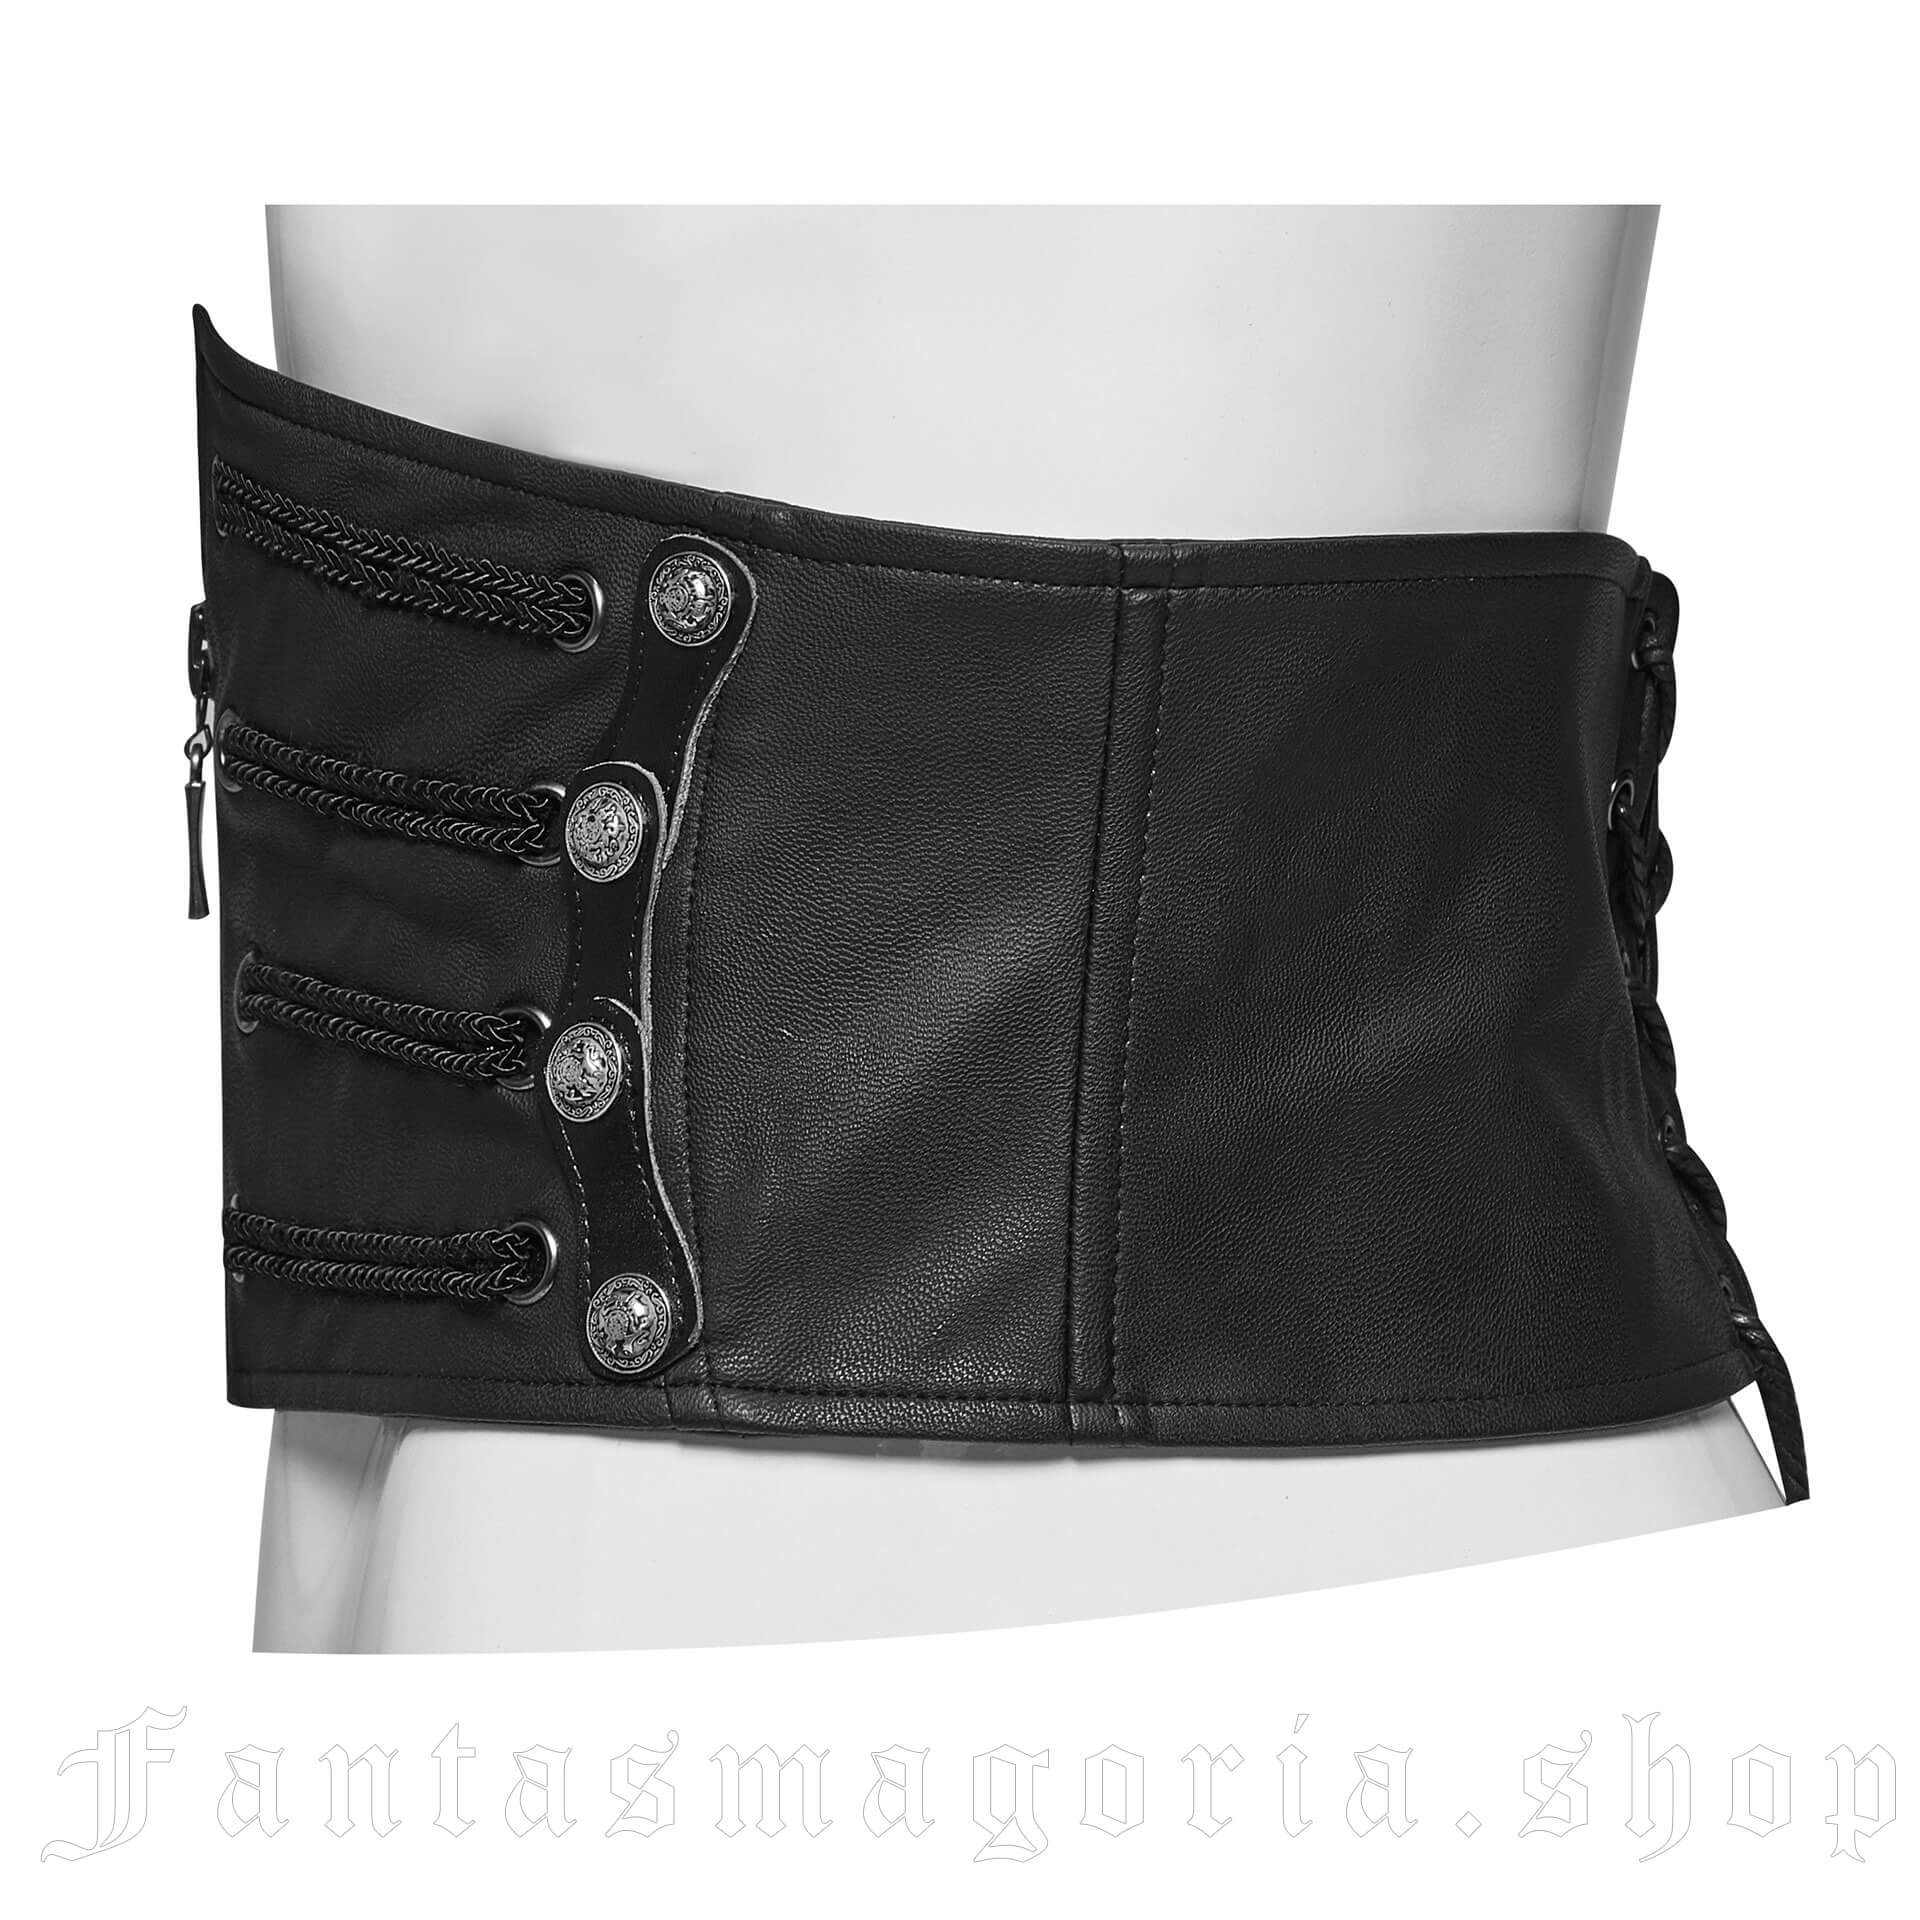 Sanctum Men's Corset Belt WS-306/Male by PUNK RAVE brand